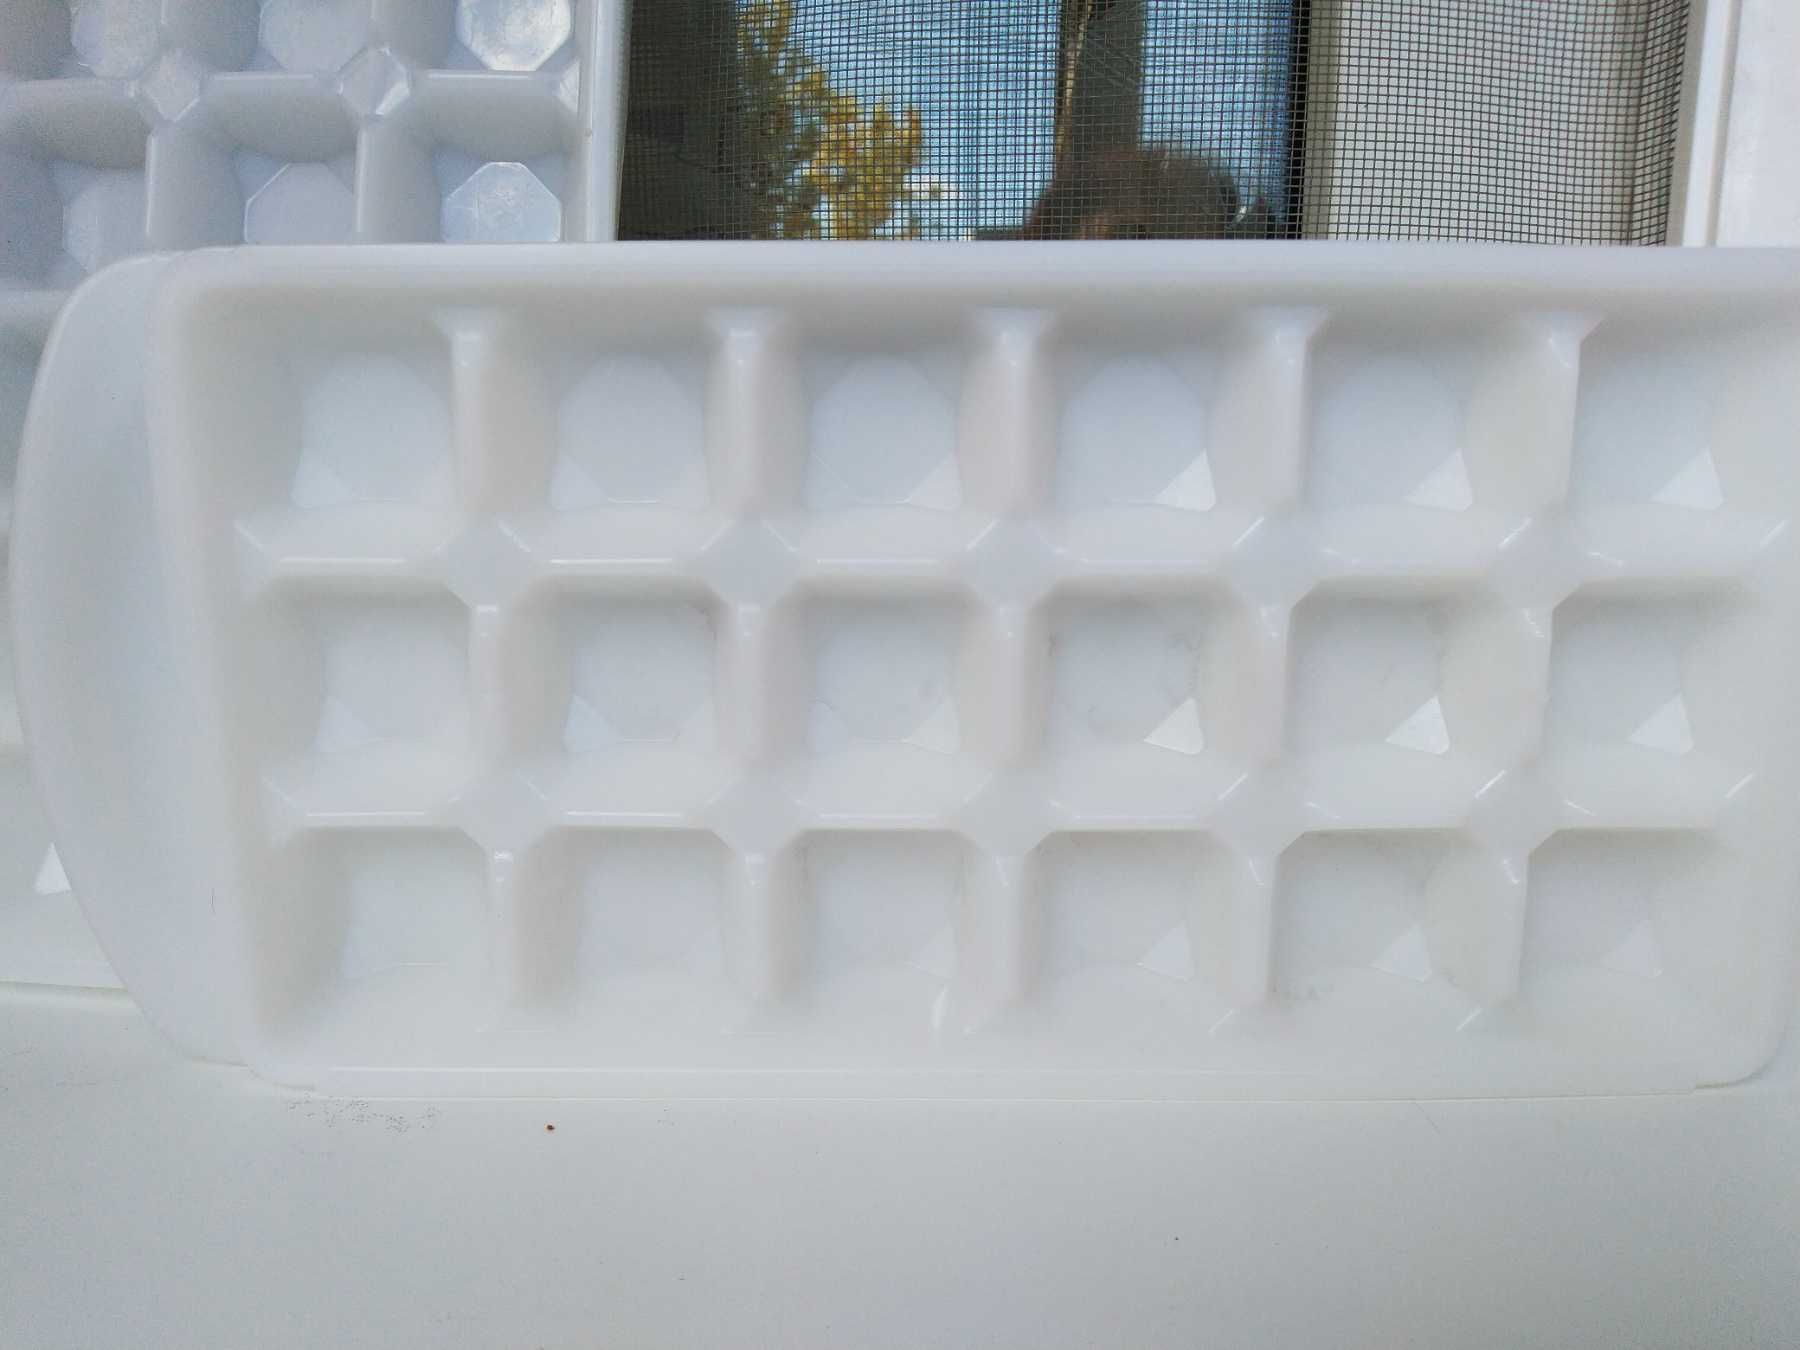 ледница для холодильника ,пластик,фома для льда,18 кубиков